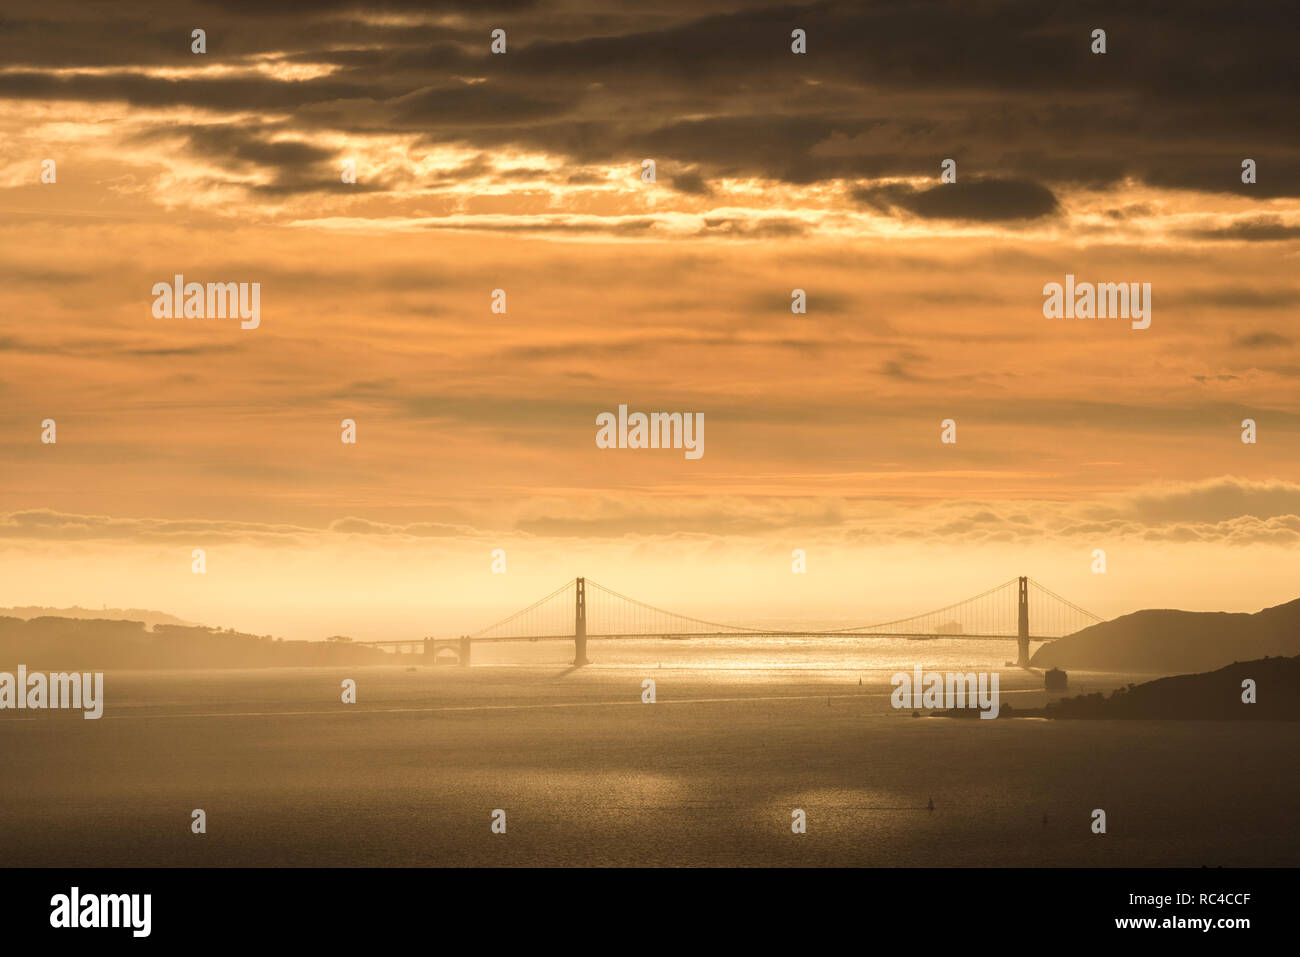 El puente Golden Gate en San Francisco, como visto desde lejos en el Berkeley Hills durante un hermoso atardecer cuando el cielo era de color naranja. Foto de stock